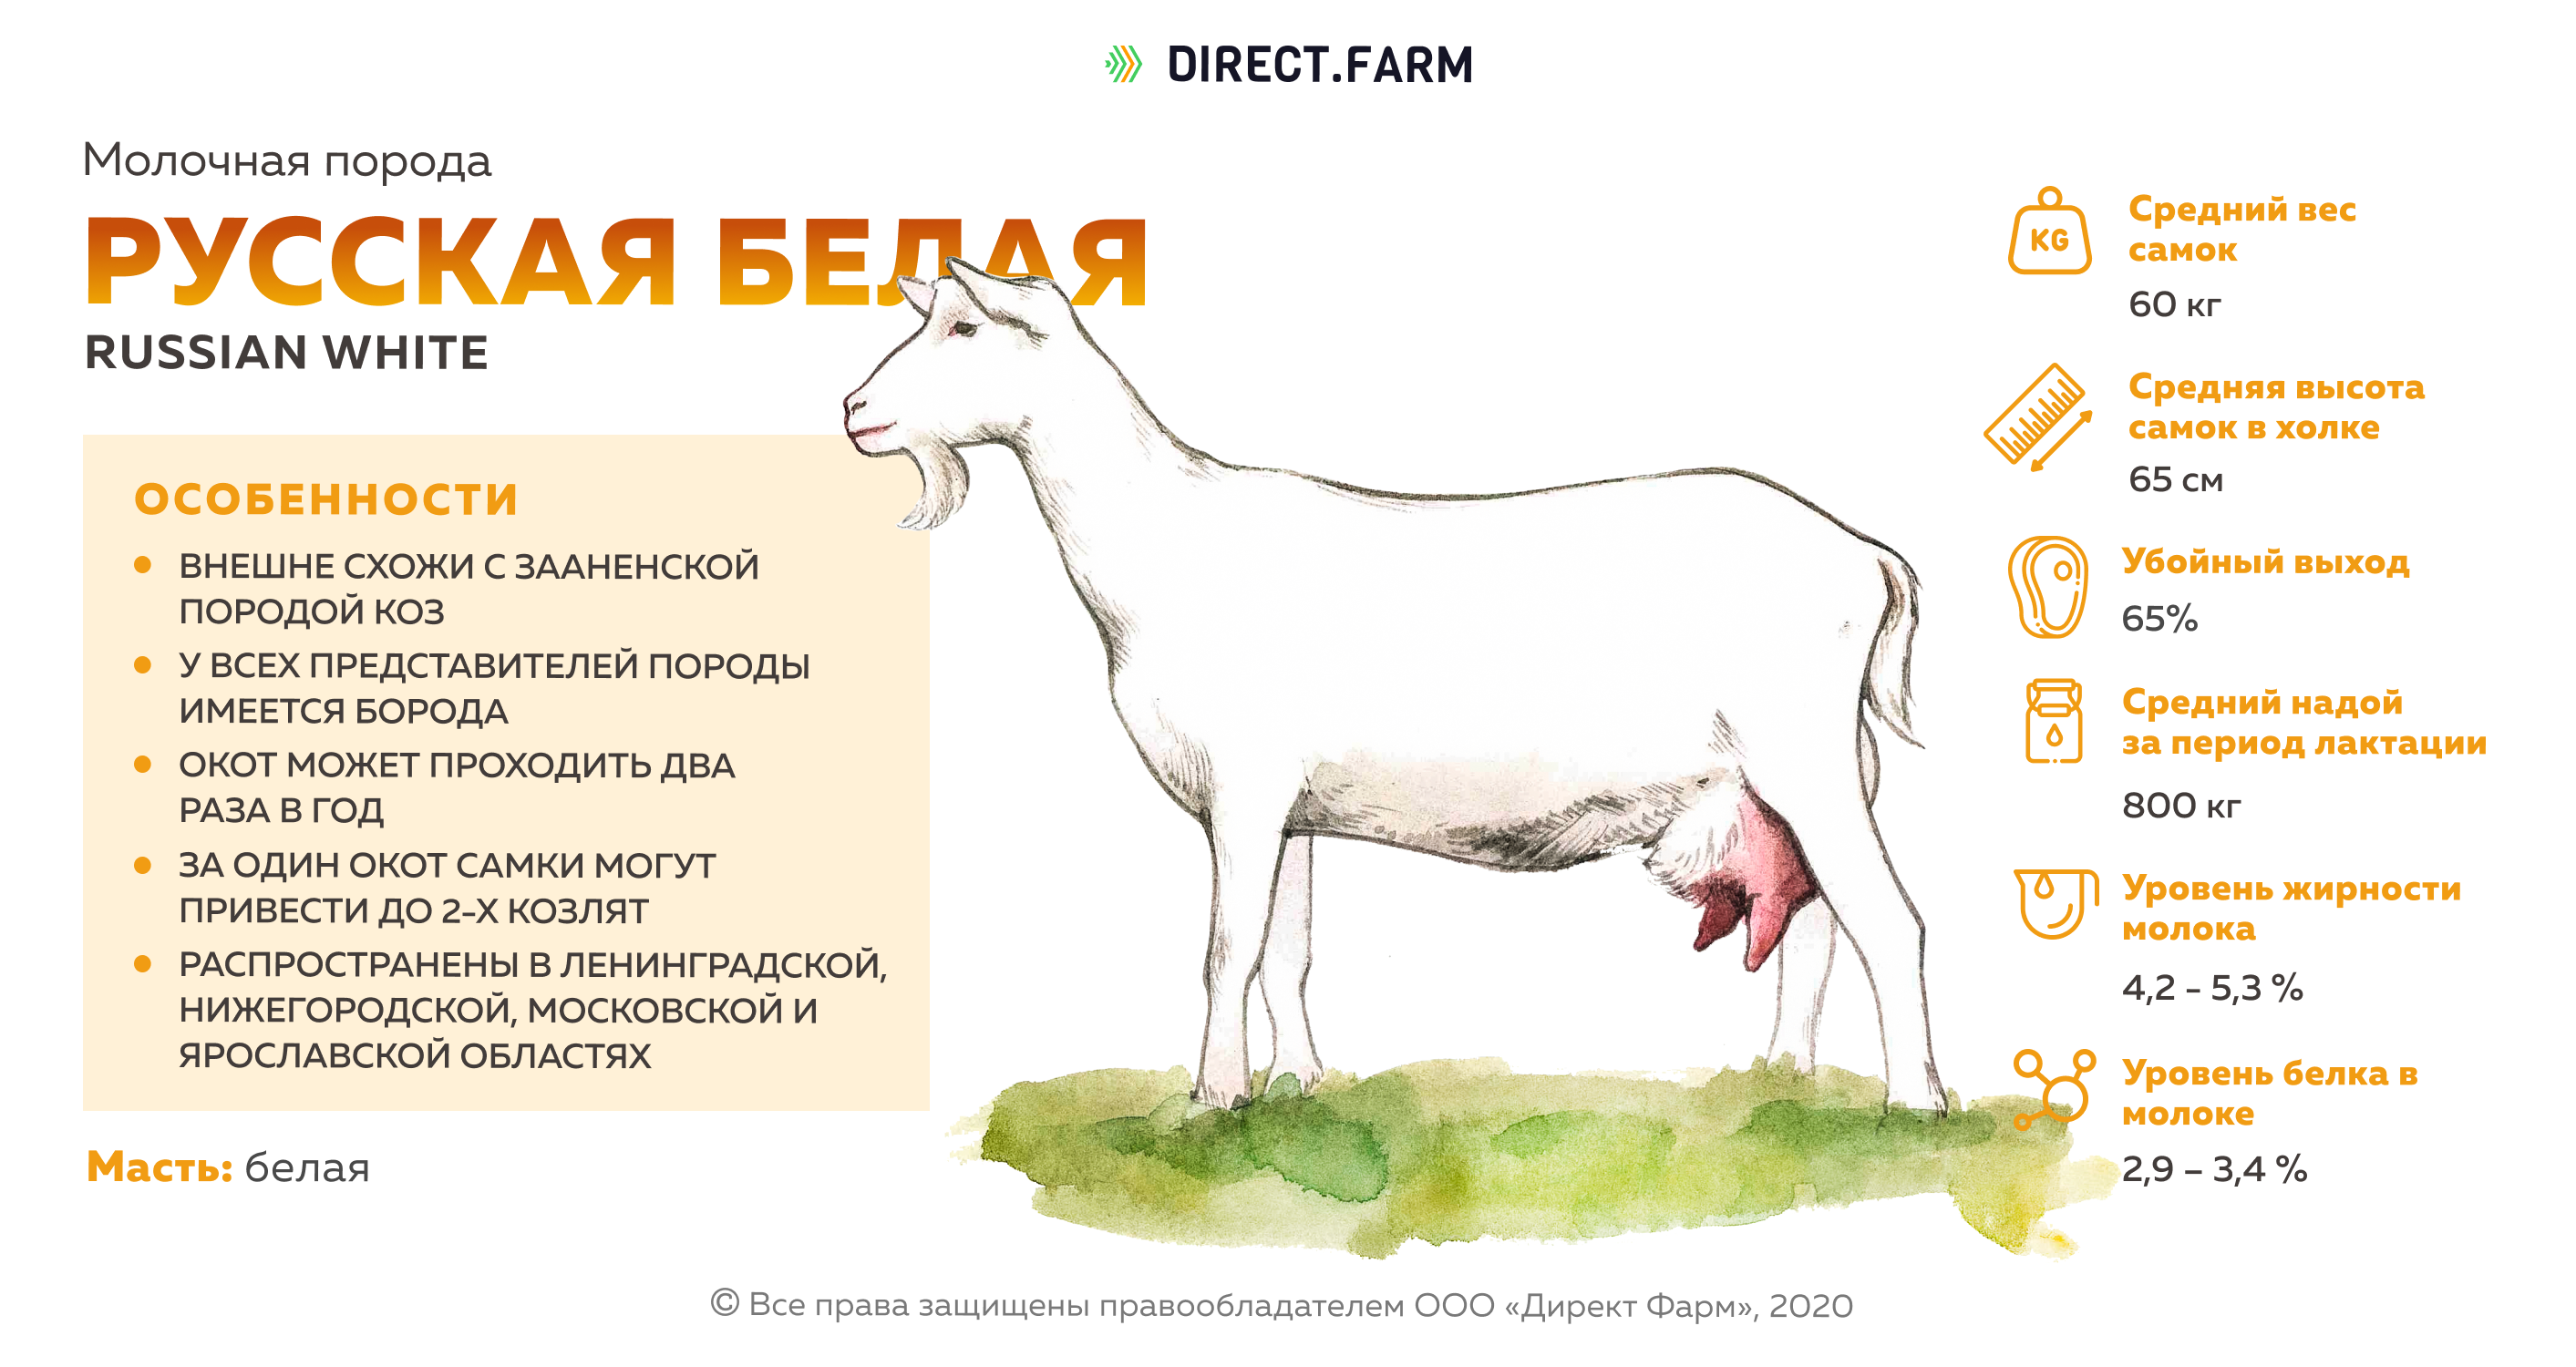 Сколько литров дает коза. Молоко козы нубийская порода. Сколько молока дает коза. Козы молочного направления продуктивности. Продуктивность молока пород коз.